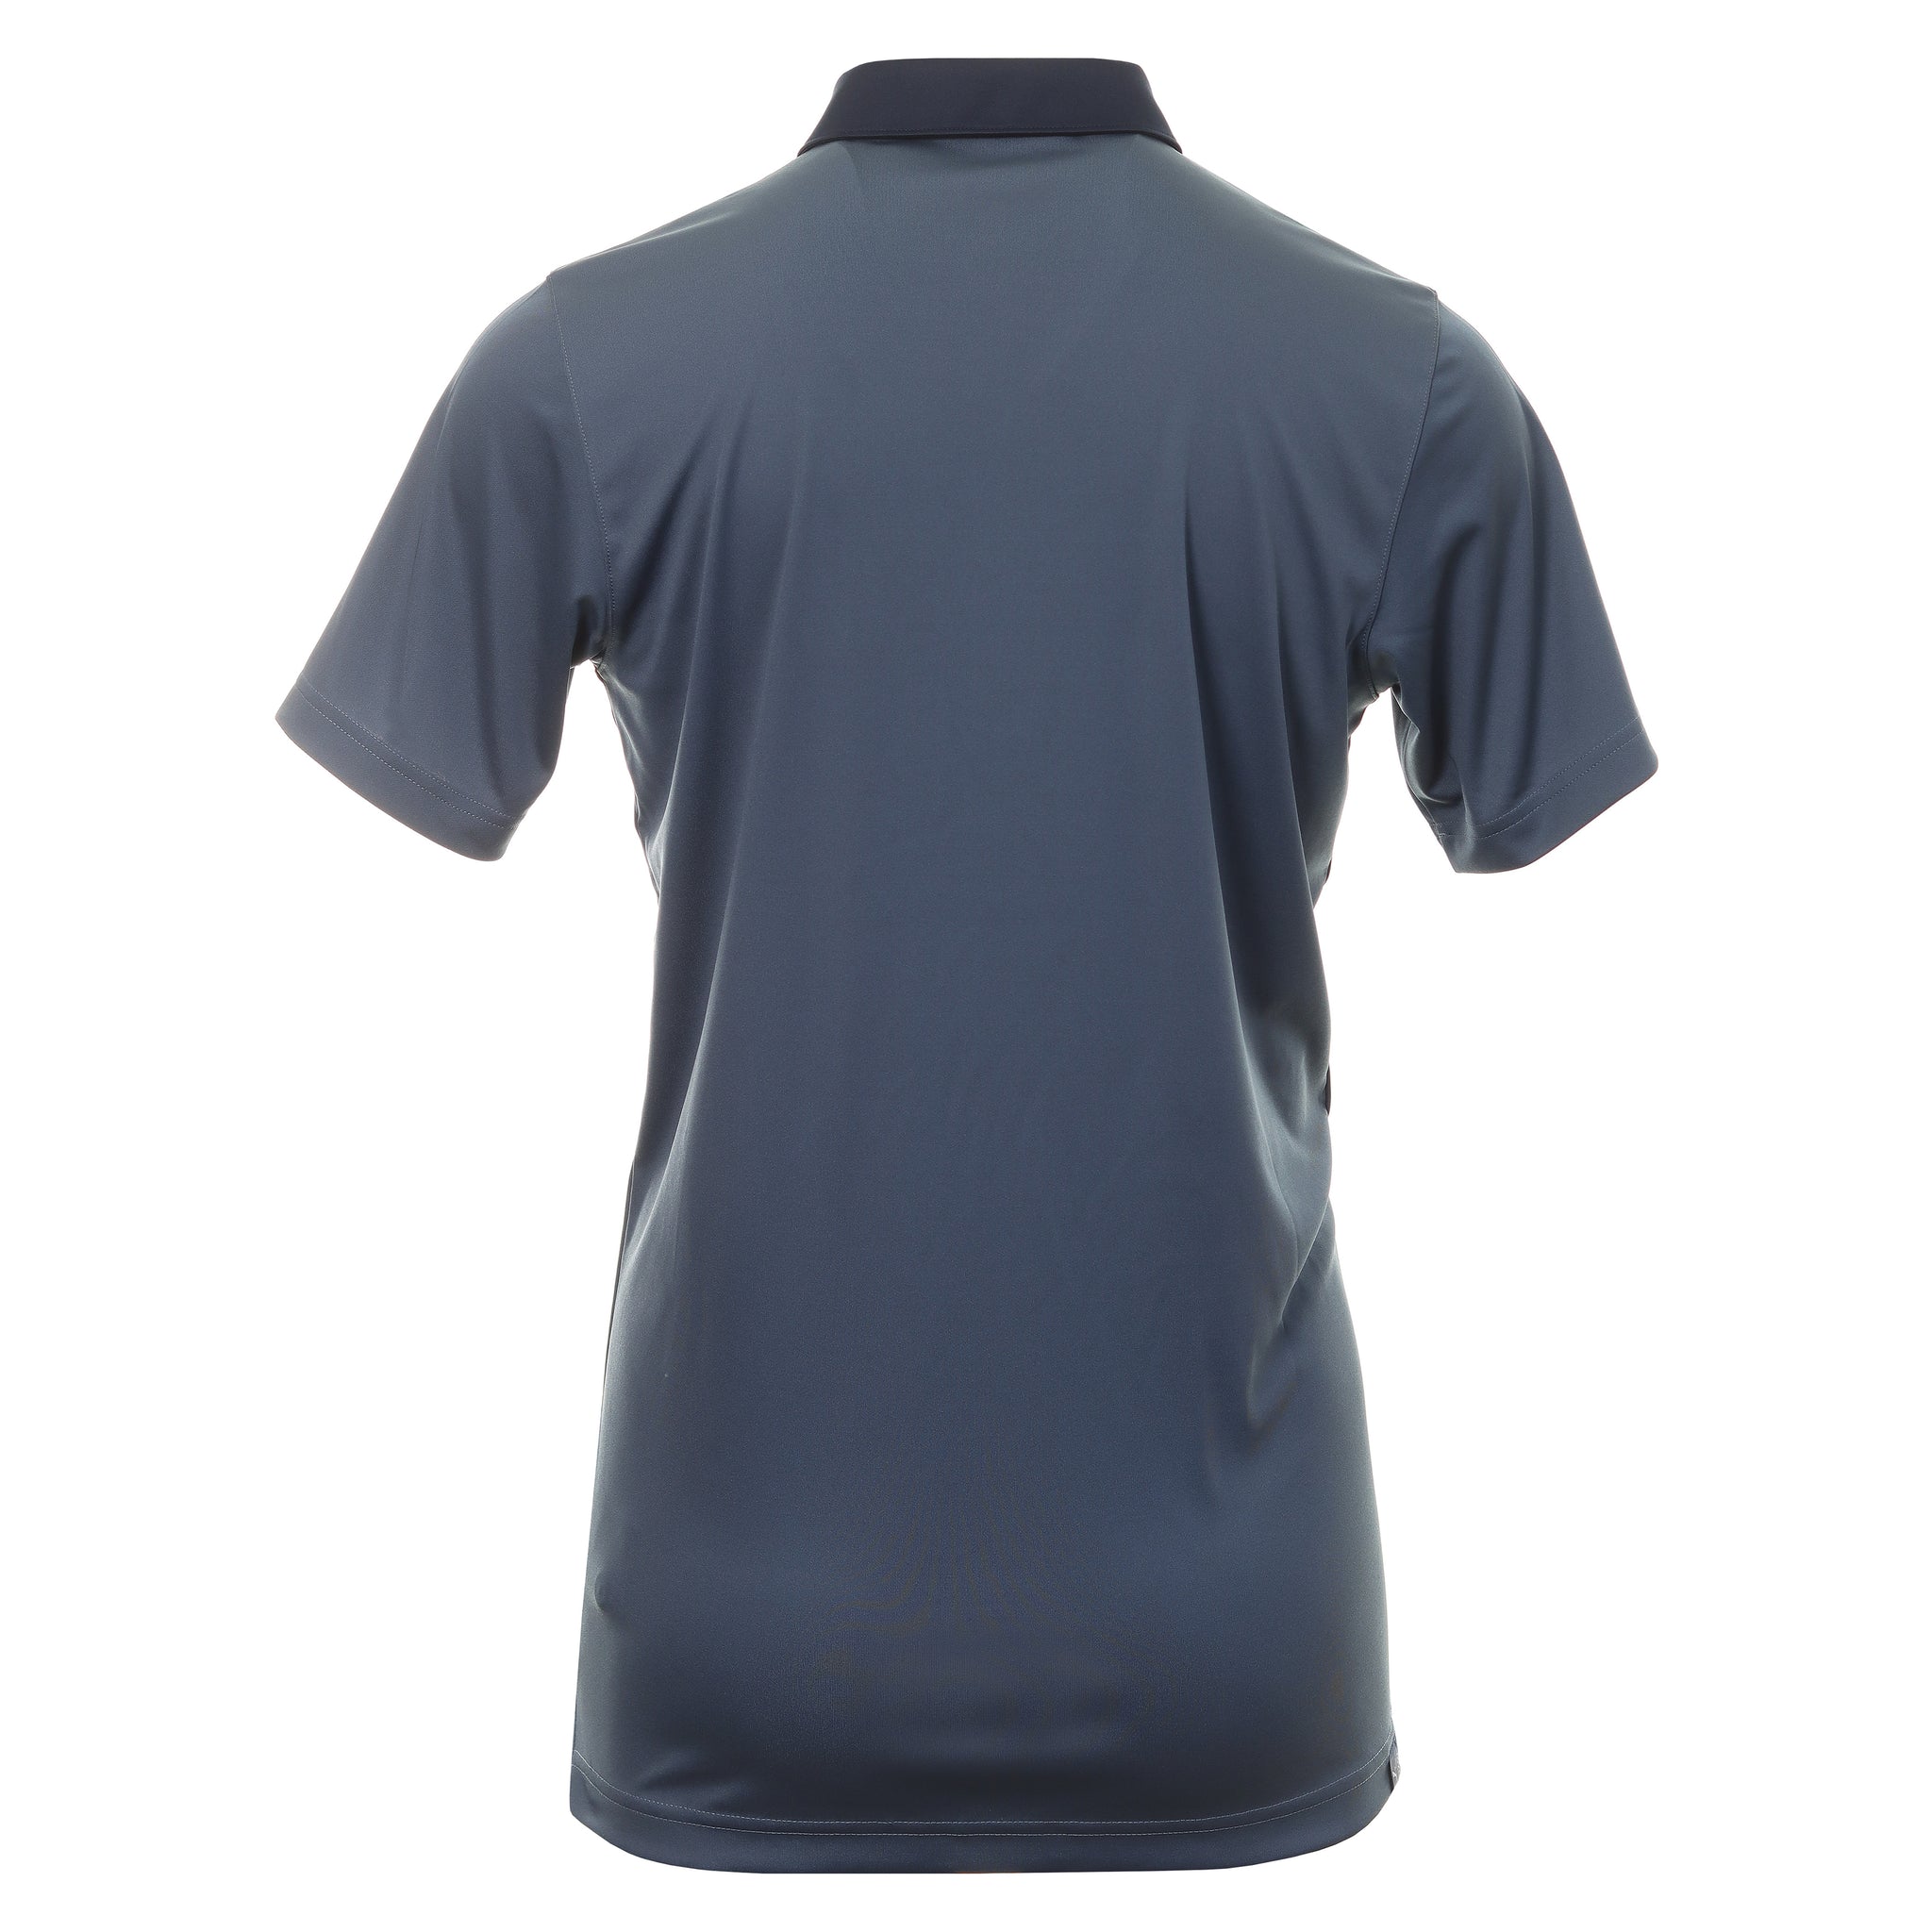 puma-golf-gamer-polo-shirt-599118-evening-sky-navy-blazer-25